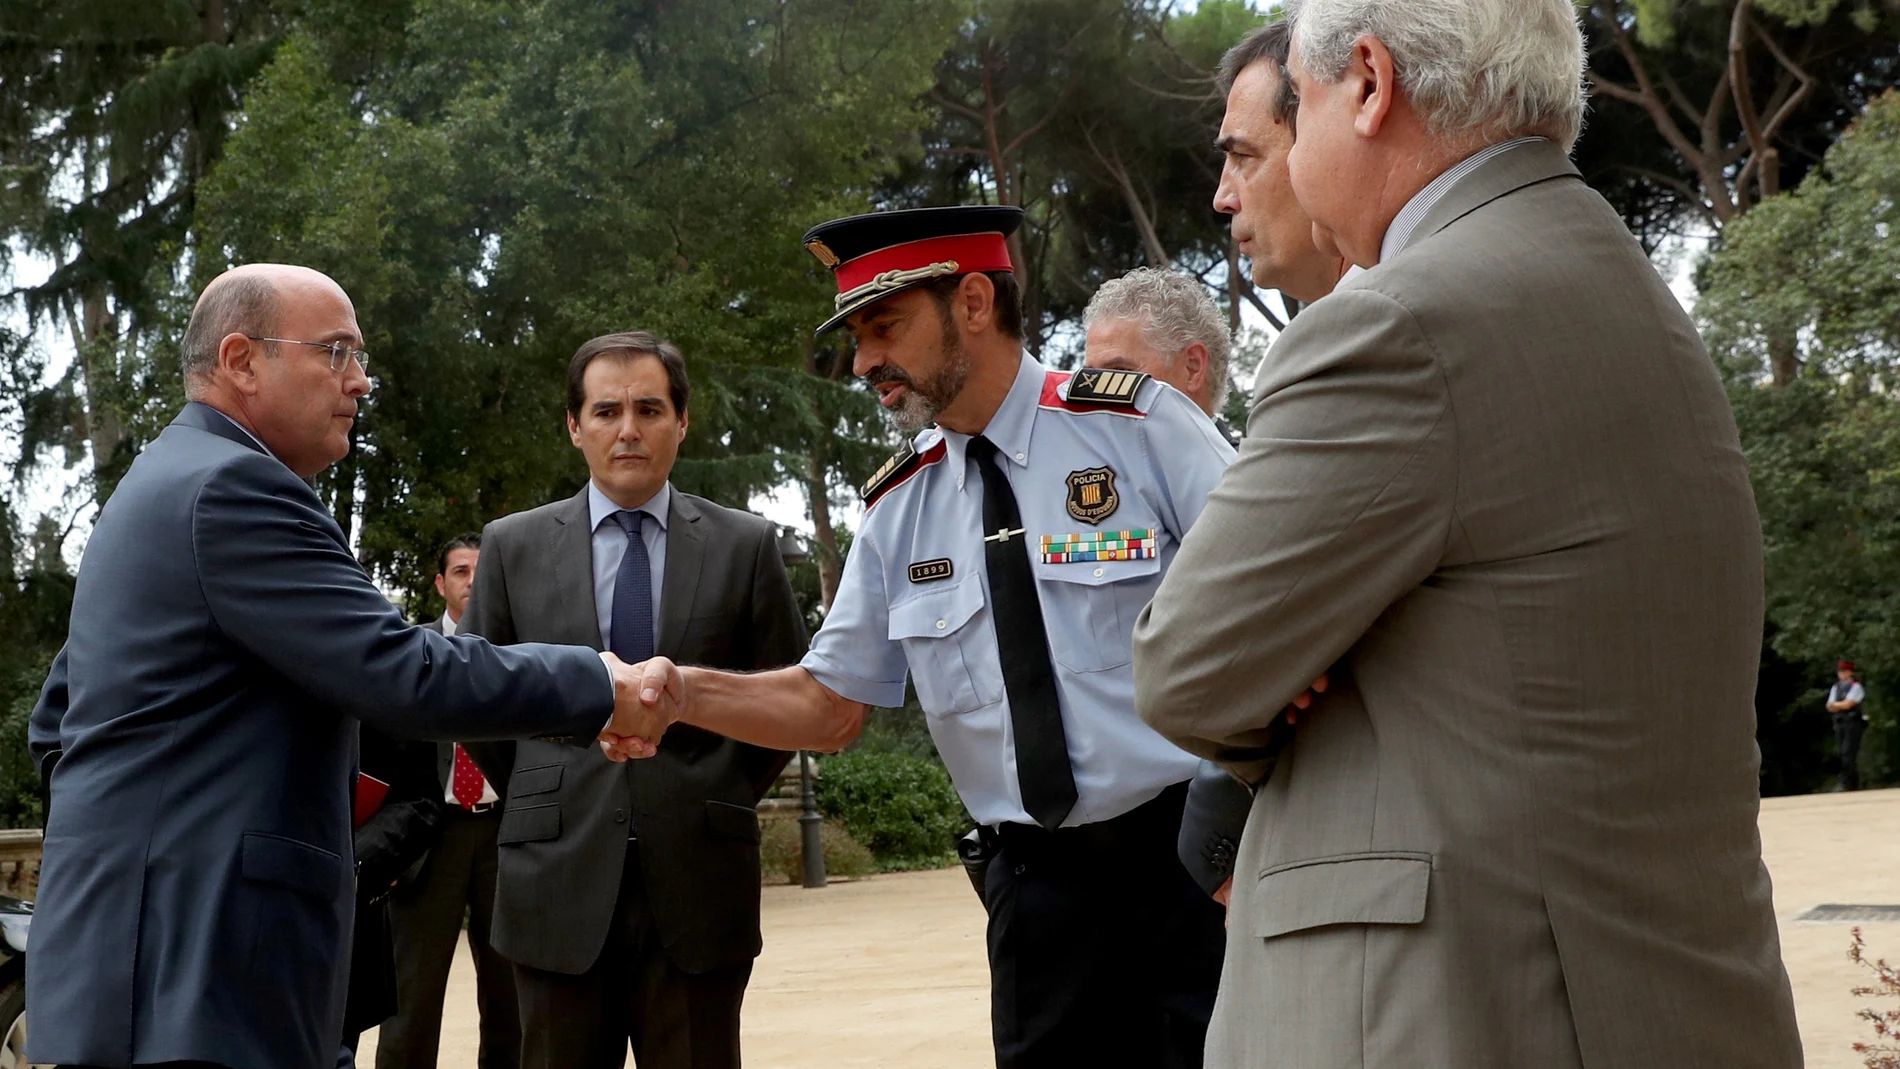 El entonces responsable de los Mossos d'Esquadra, Josep Lluis Trapero, estrecha la mano al coronel de la Guardia Civil, Diego Perez de los Cobos, poco antes del 1-O